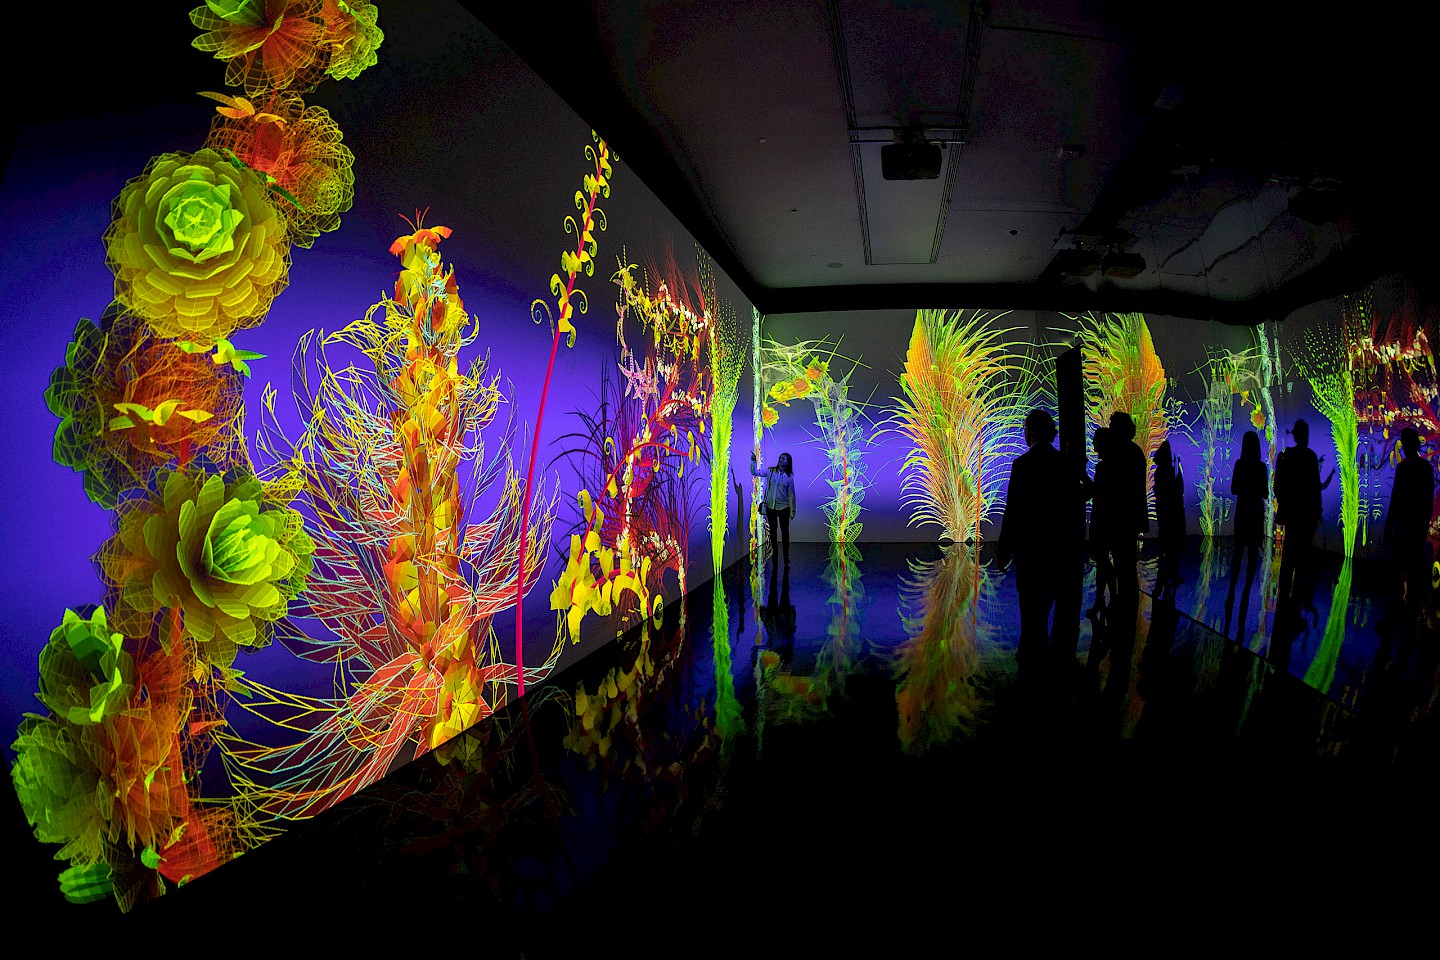 Eine große Projektion des Künstlers Miguel Chevalier, bei der digitale Blumen wachsen und sich bewegen.